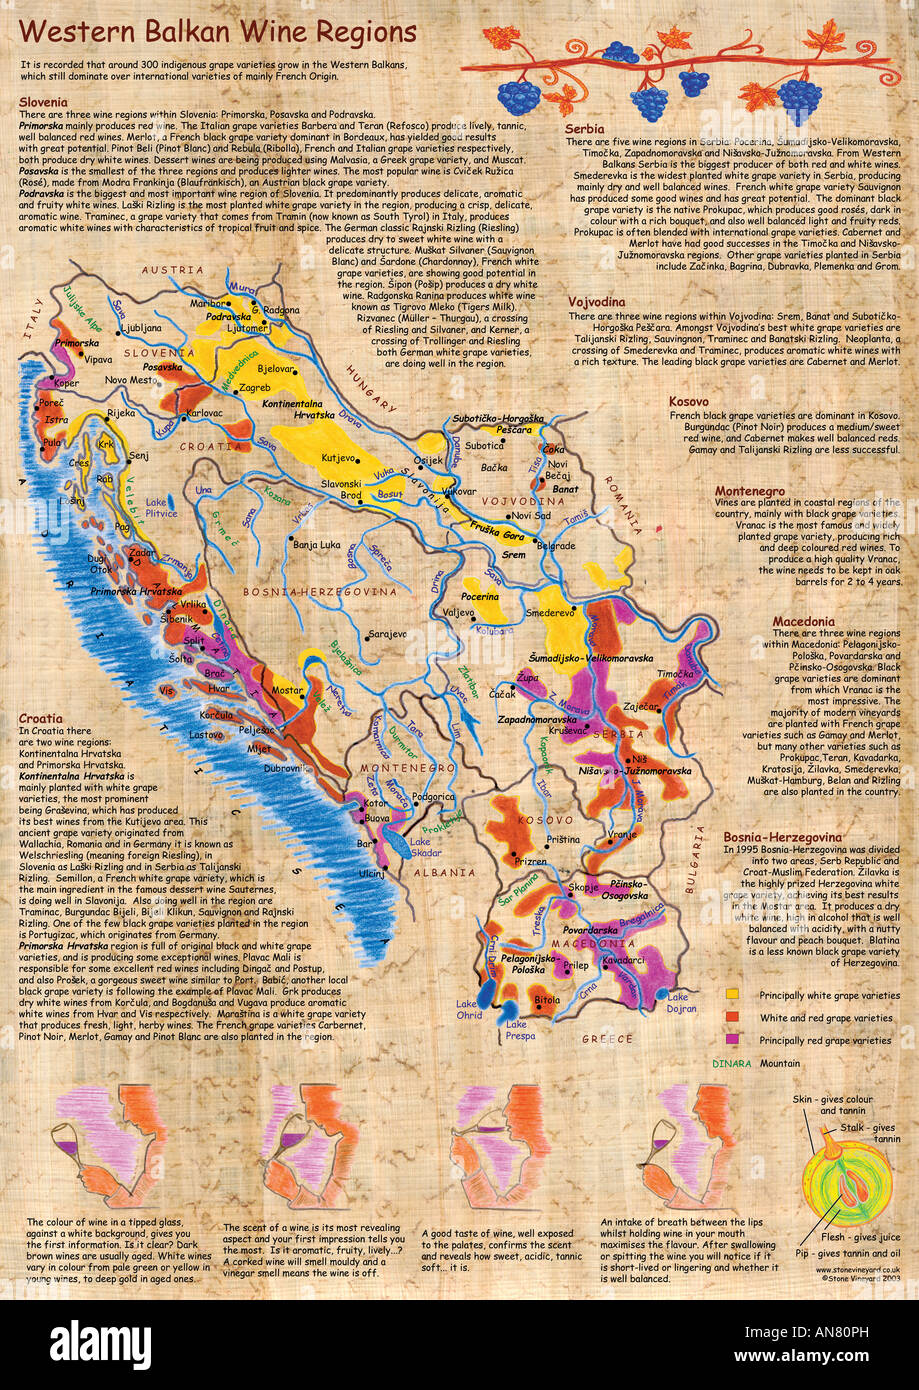 Mappa illustrata dei Balcani occidentali le regioni del vino - Croazia, Serbia, Slovenia, Montenegro, Macedonia, Bosnia, Kosovo e Vojvodina Foto Stock